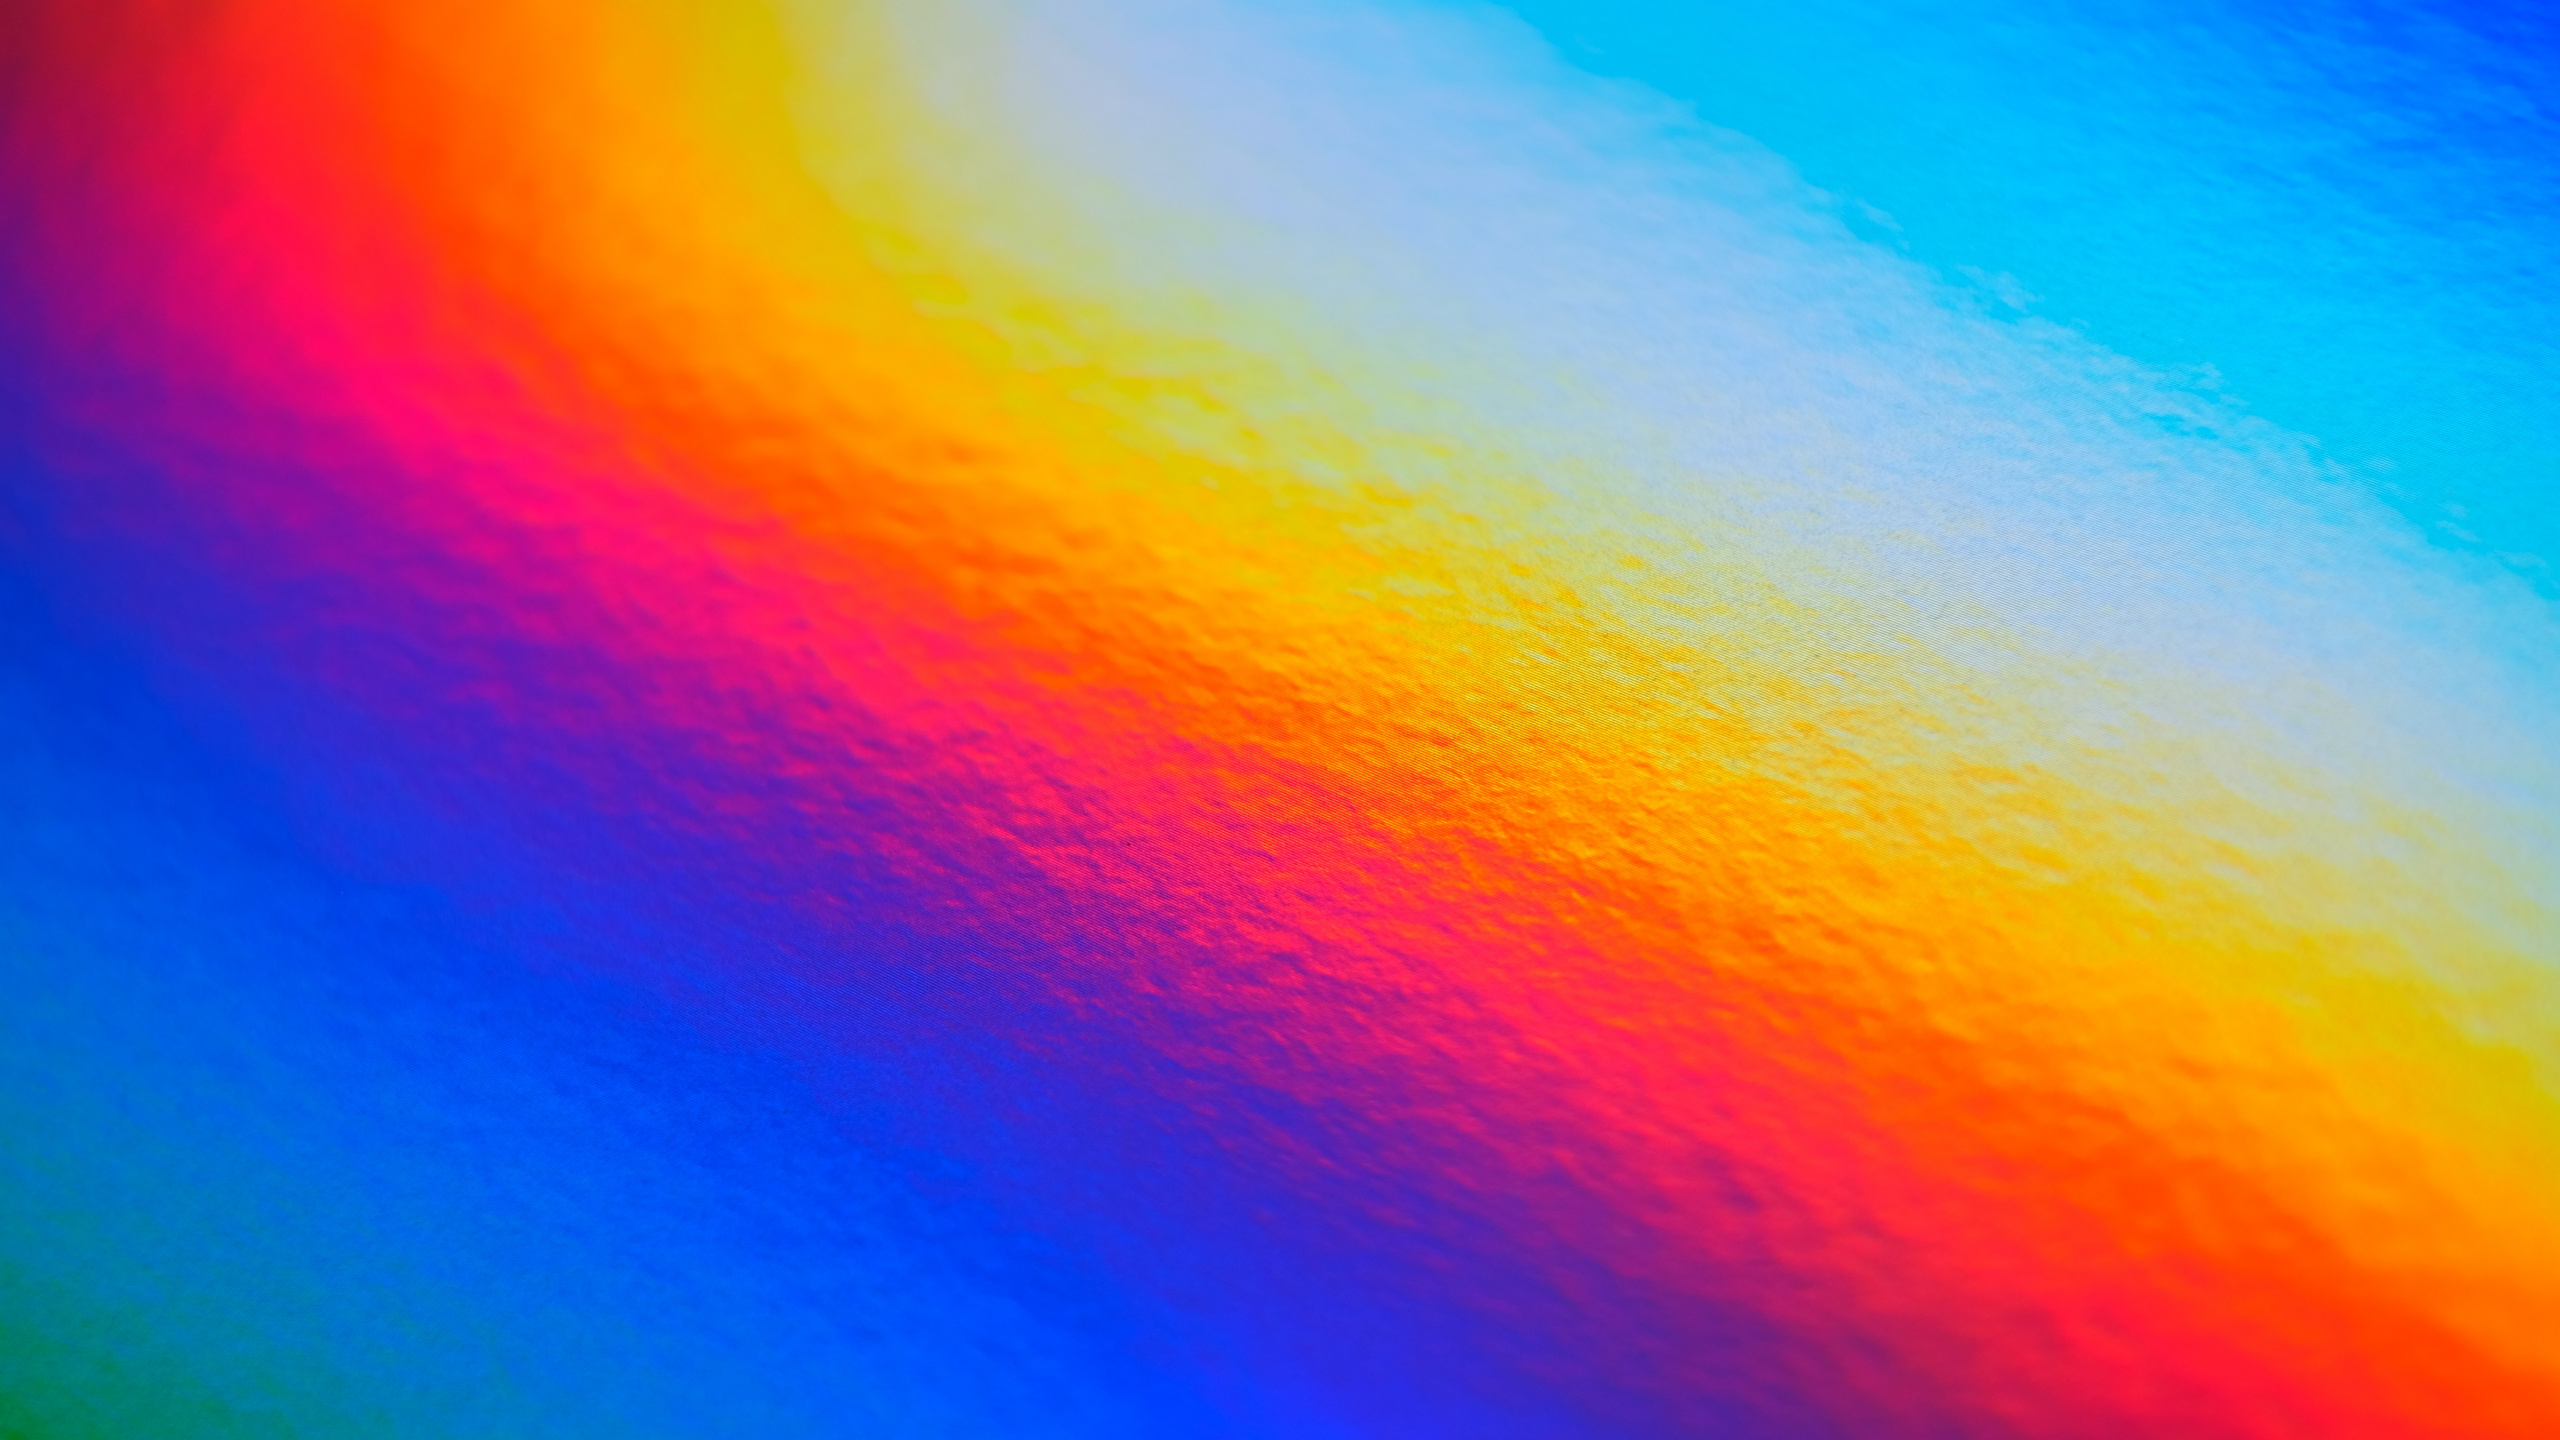 Pintura Abstracta Naranja y Azul. Wallpaper in 2560x1440 Resolution